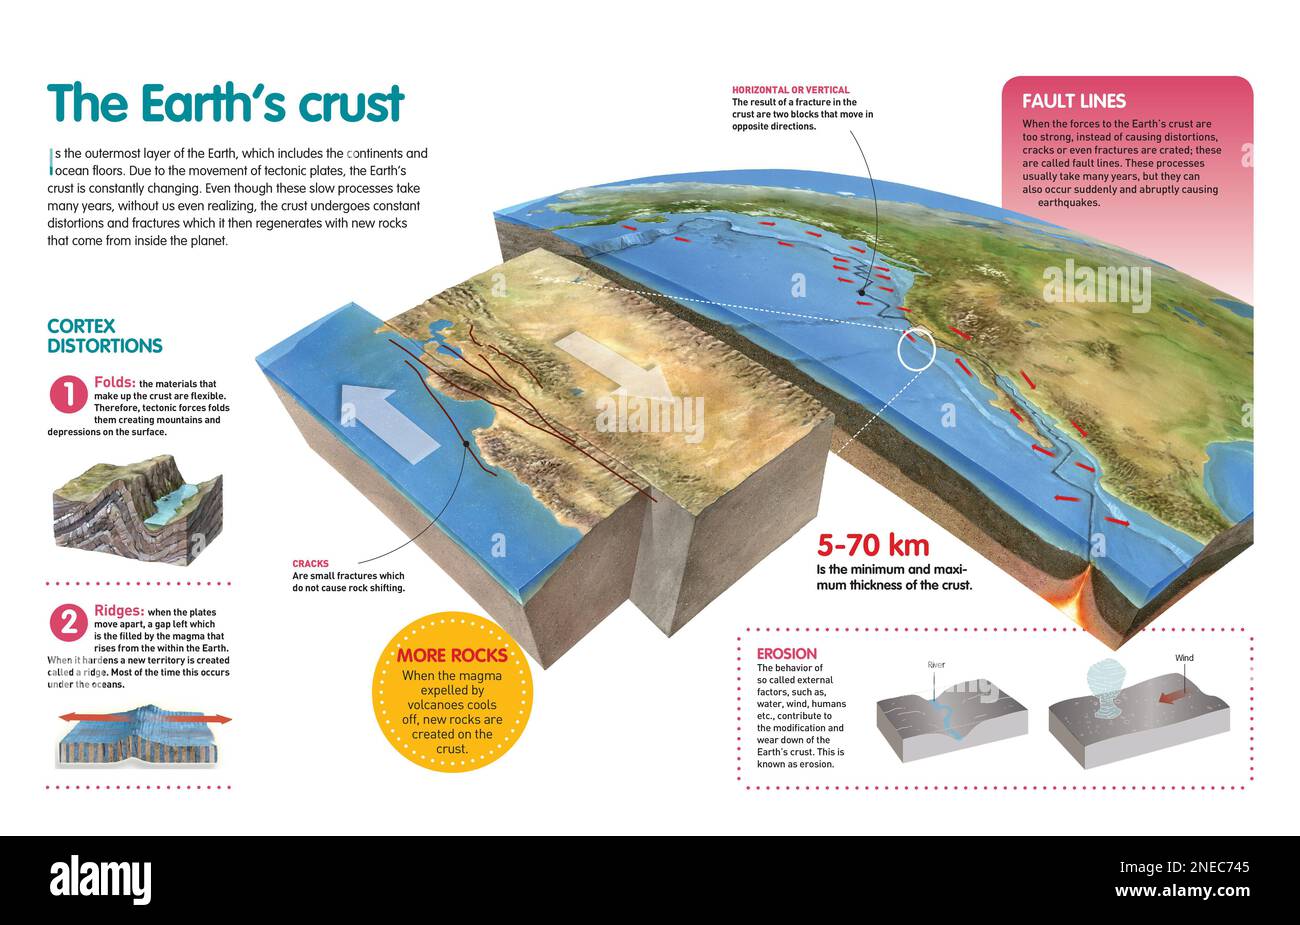 Infographie qui explique le processus changeant de la croûte terrestre en raison du mouvement des plaques tectoniques. [QuarkXPress (.qxp); Adobe InDesign (.indd); 4960x3188]. Banque D'Images